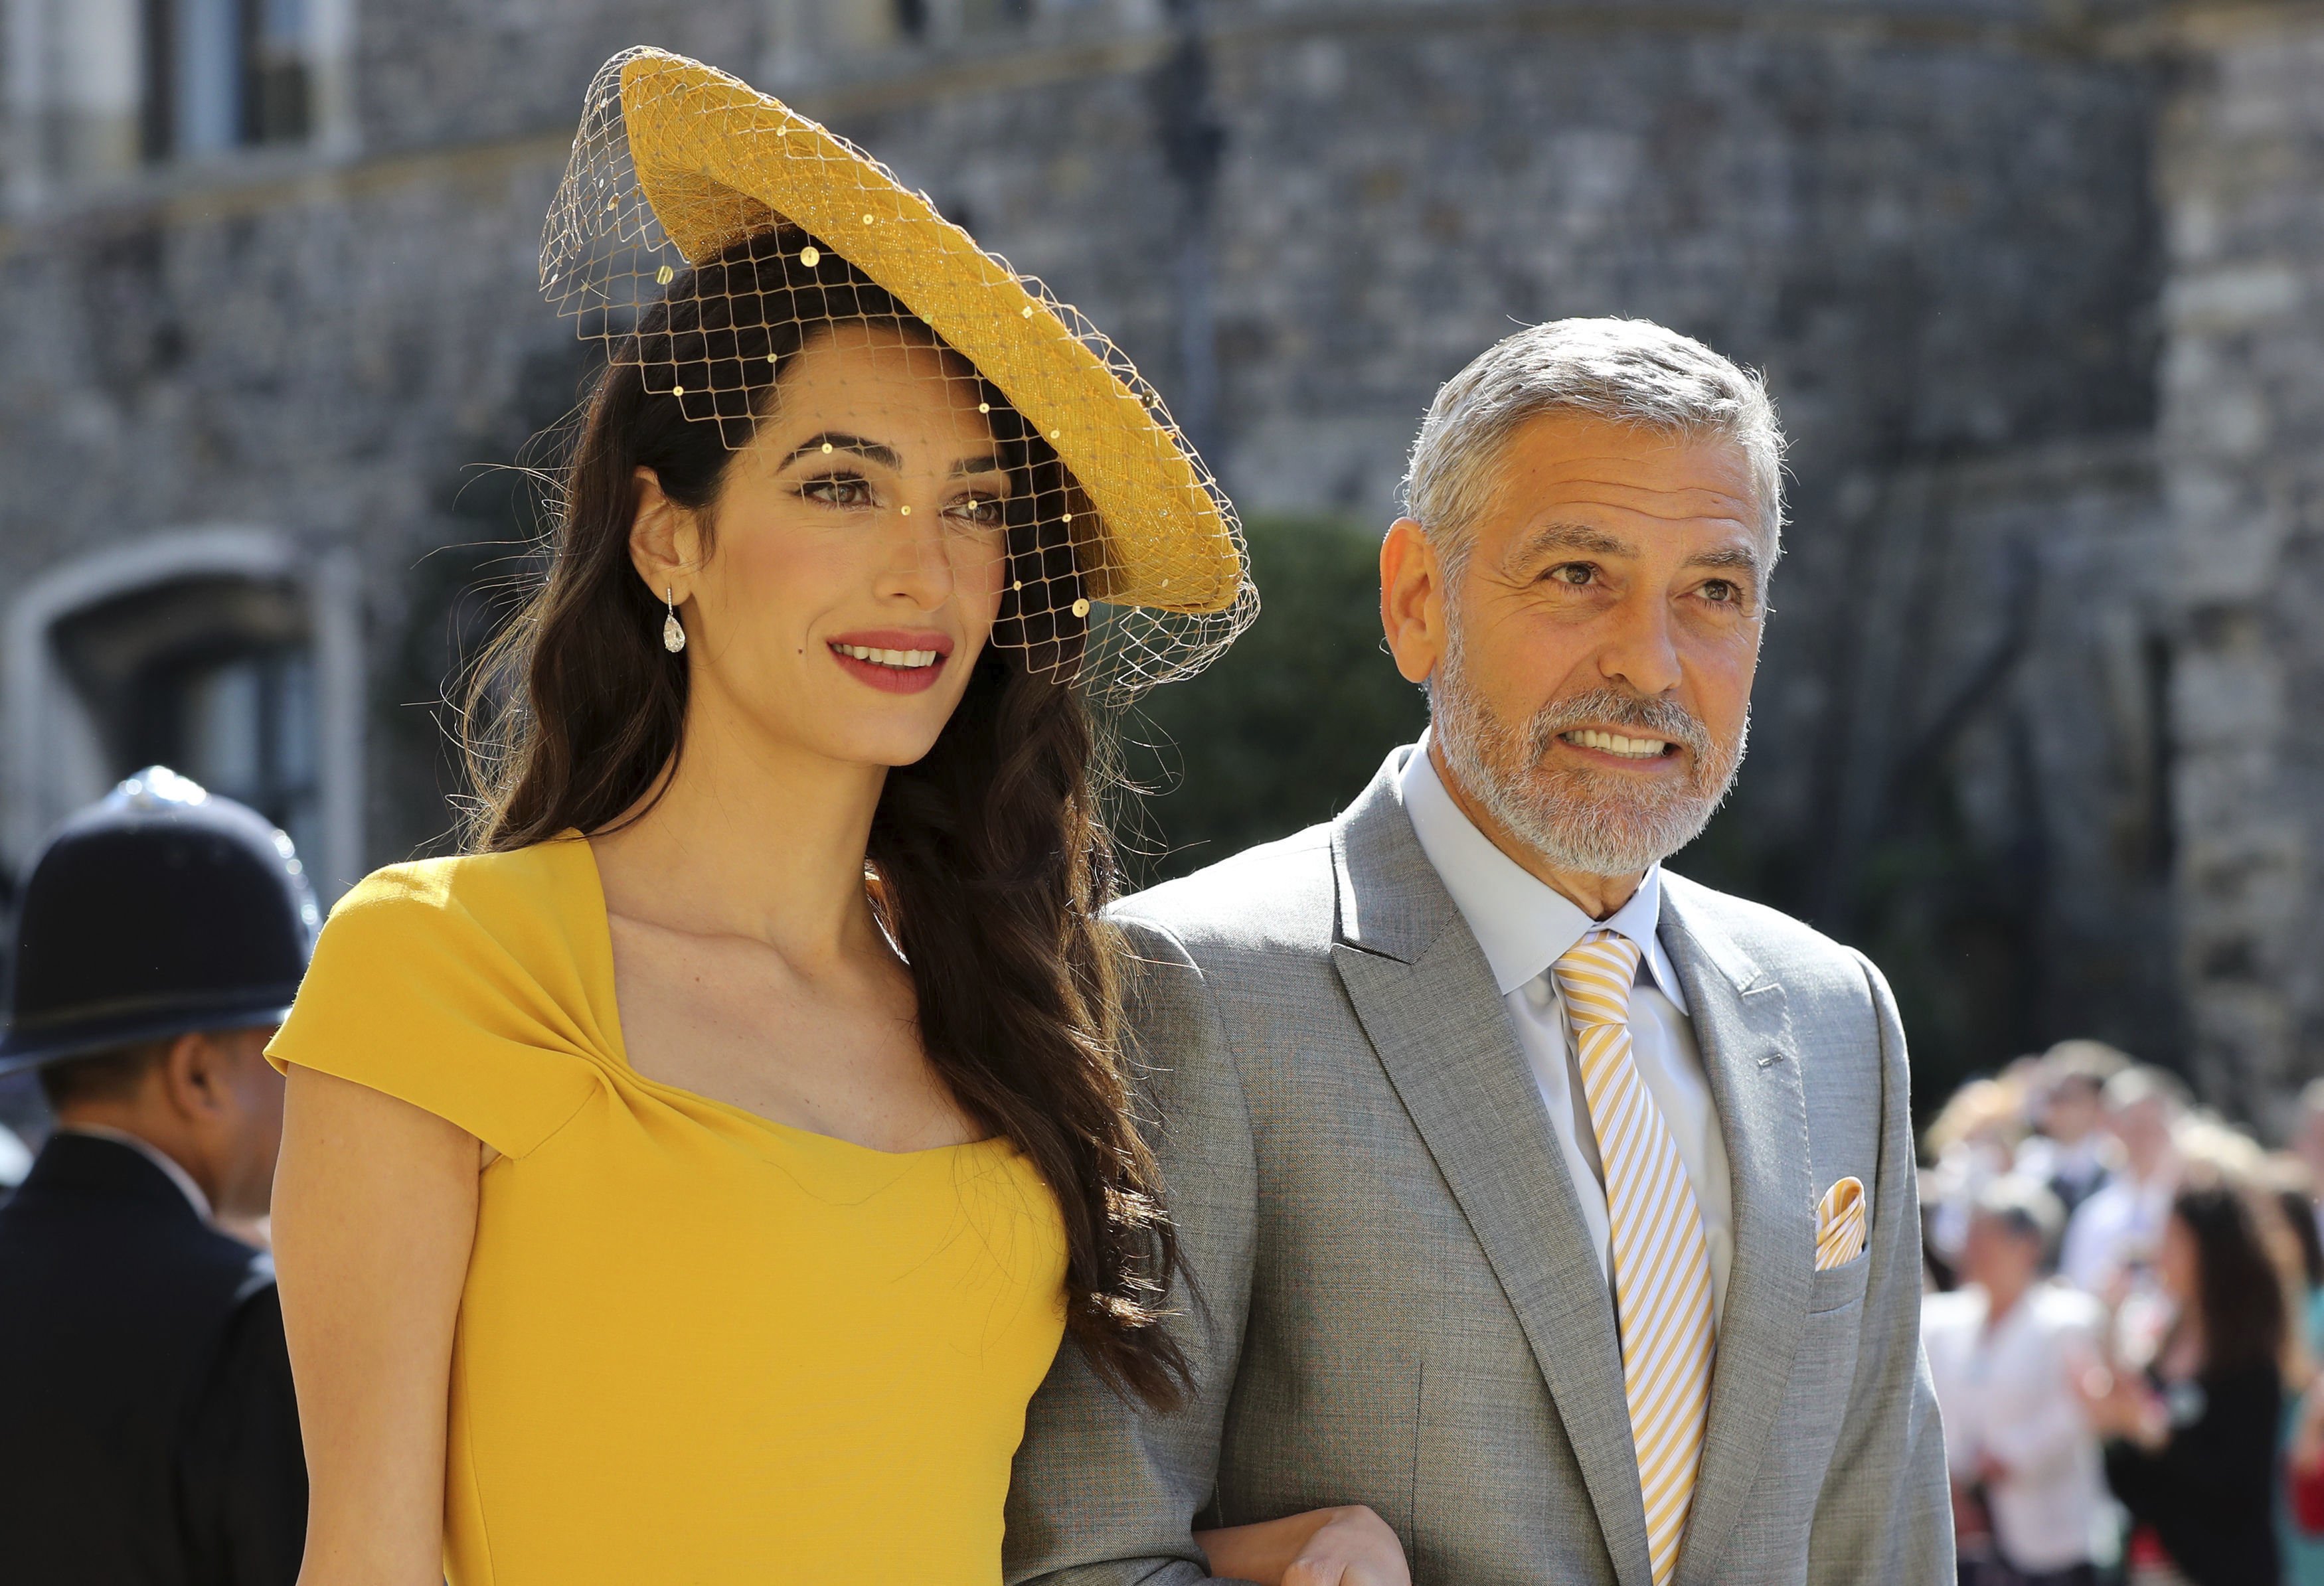 Clatellada a l'unionisme: el groc de la dona de Clooney triomfa a la boda de l'any